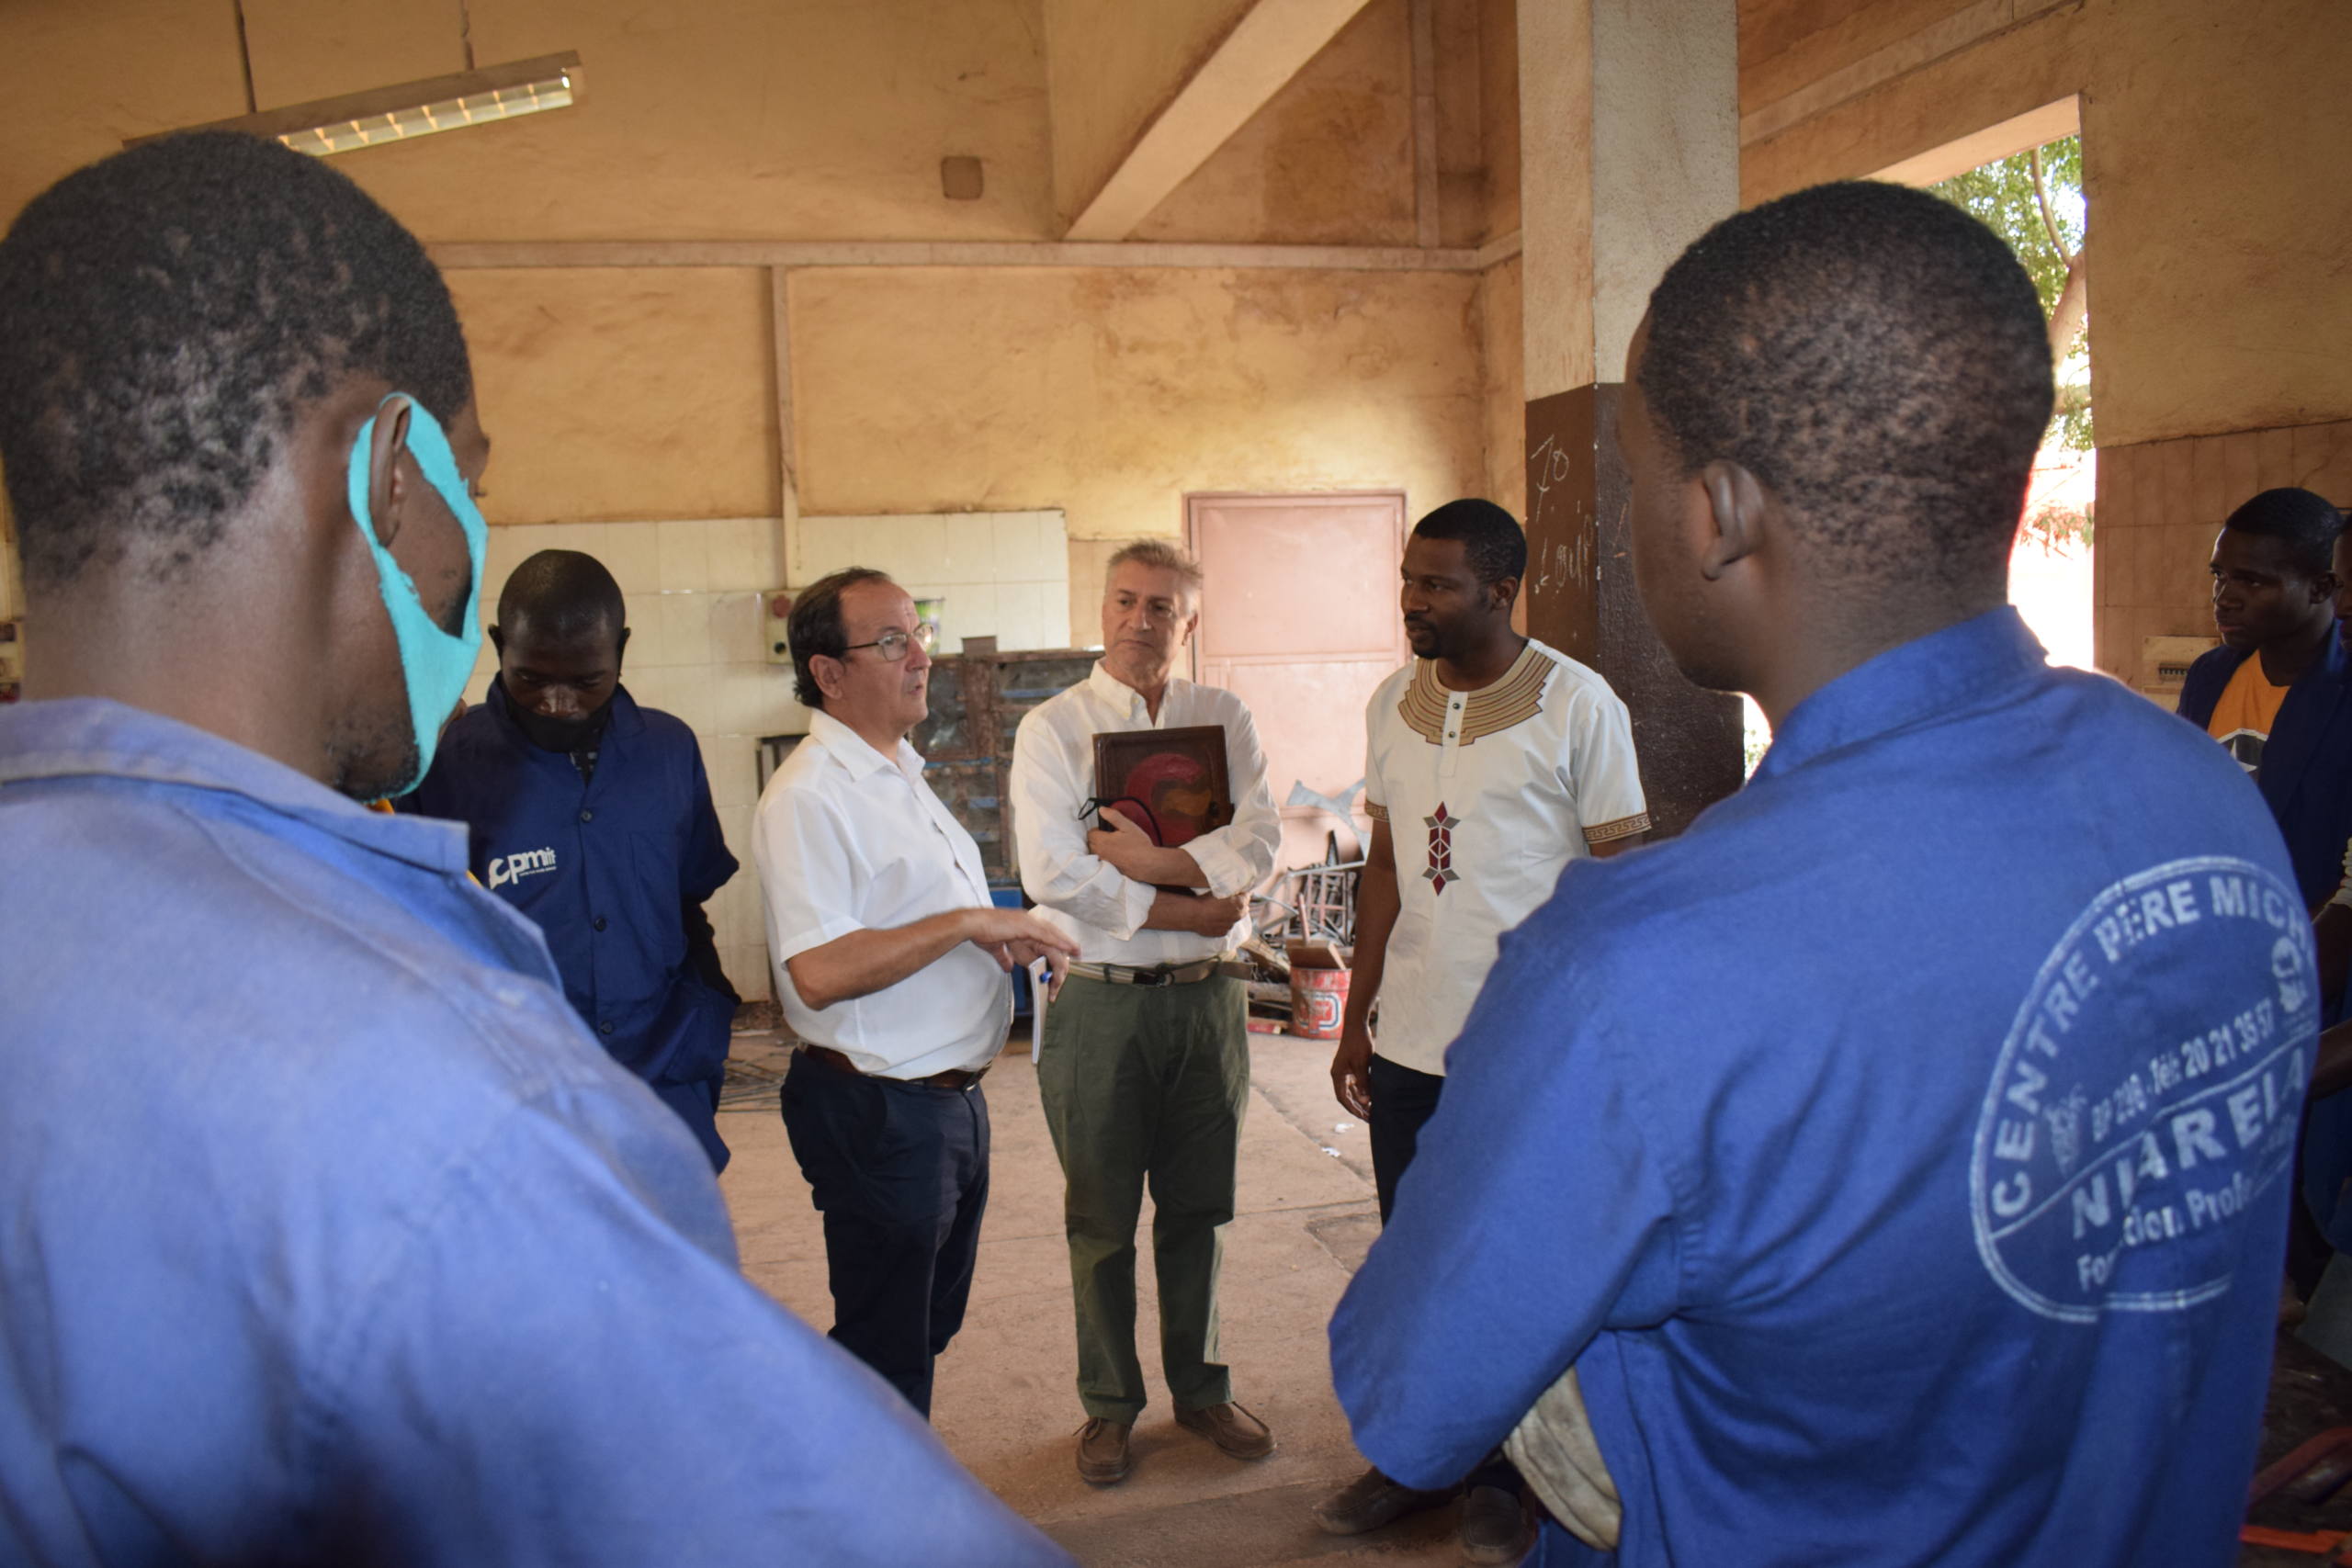 Visita del coordinador general de la Cooperación Española en Malí al Centro  Père Michel de Bamako